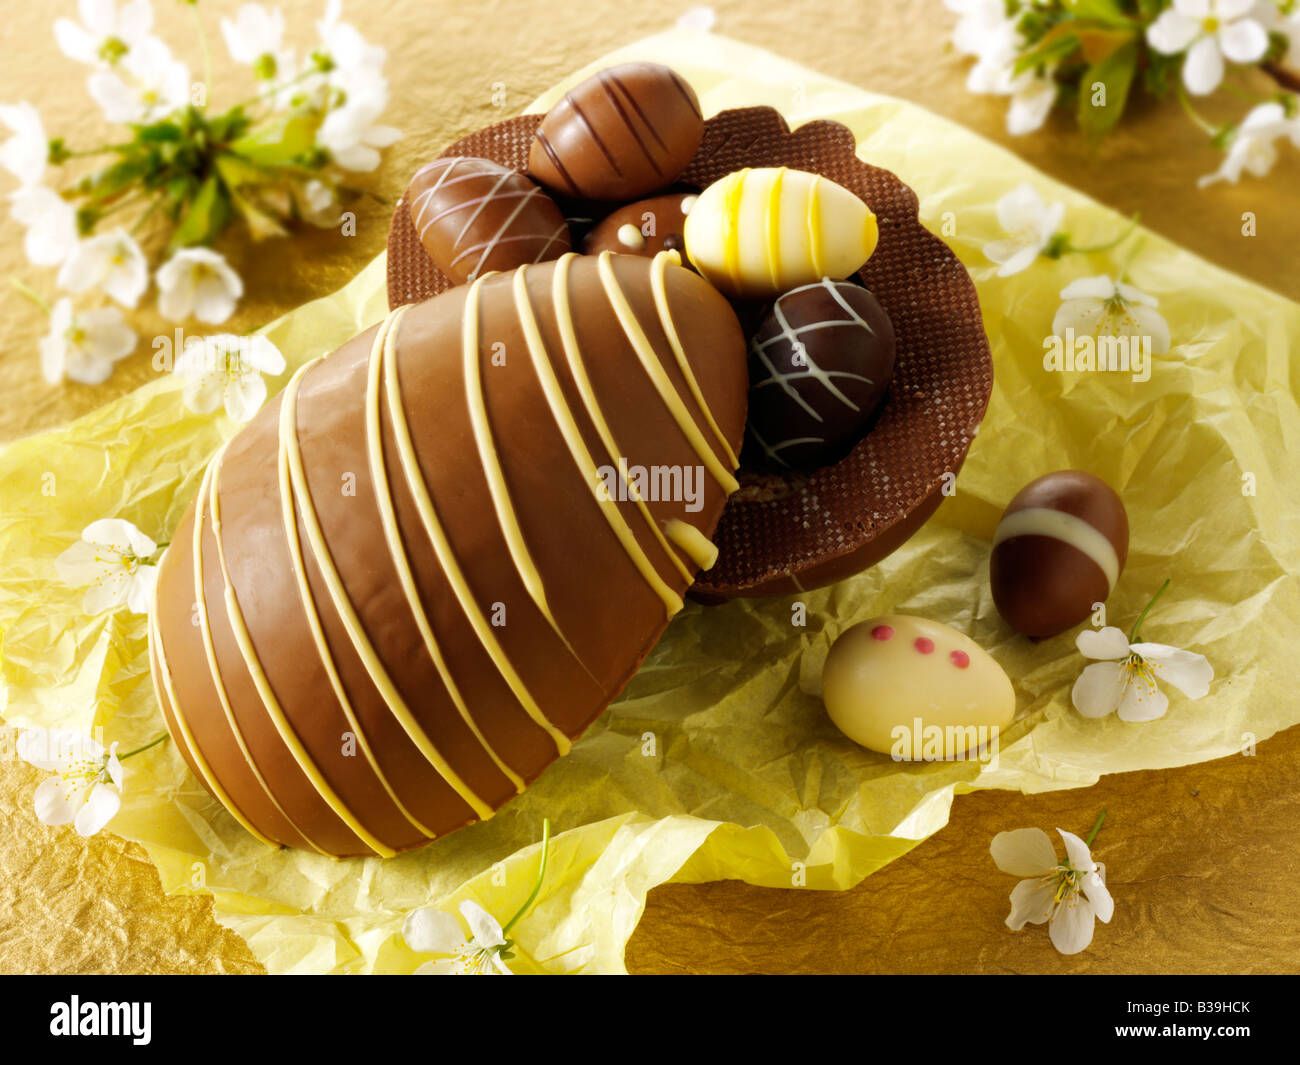 Tradizionale fatto a mano di cioccolato decorate uova di Pasqua Foto Stock